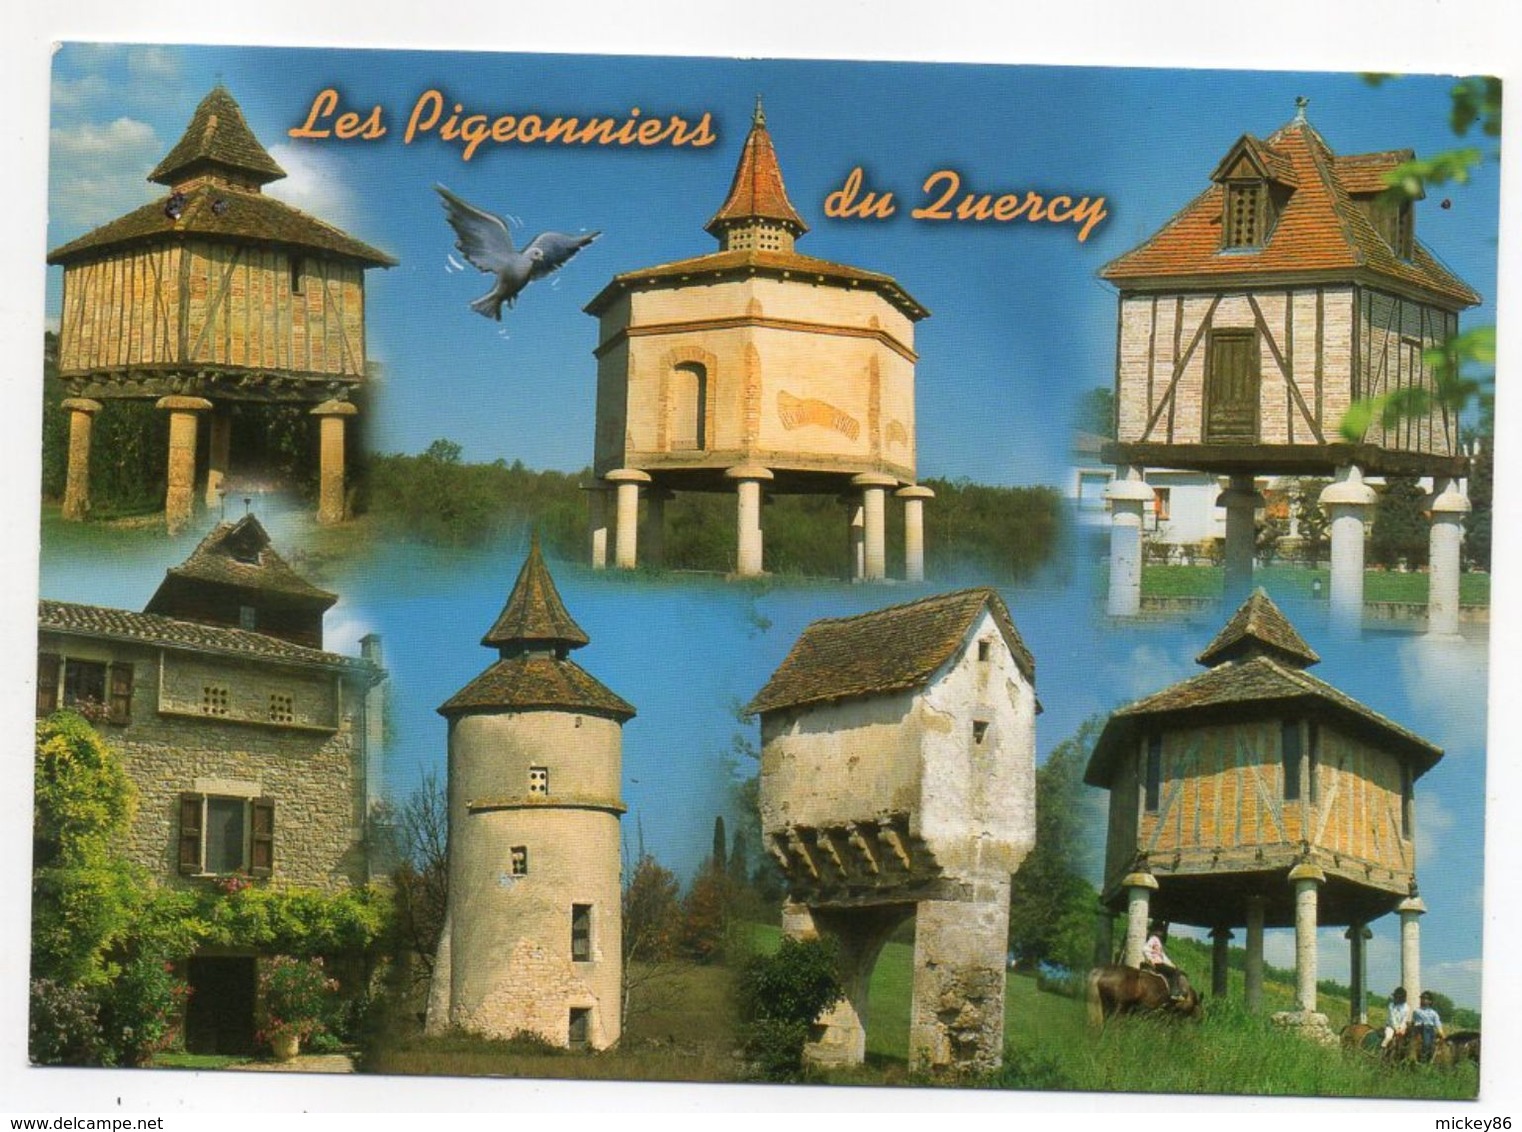 Quercy--Les Pigeonniers Du Quercy (Caylus--Dourre-Valence D'Agen-Lavergne-Lauzerte-) - Midi-Pyrénées